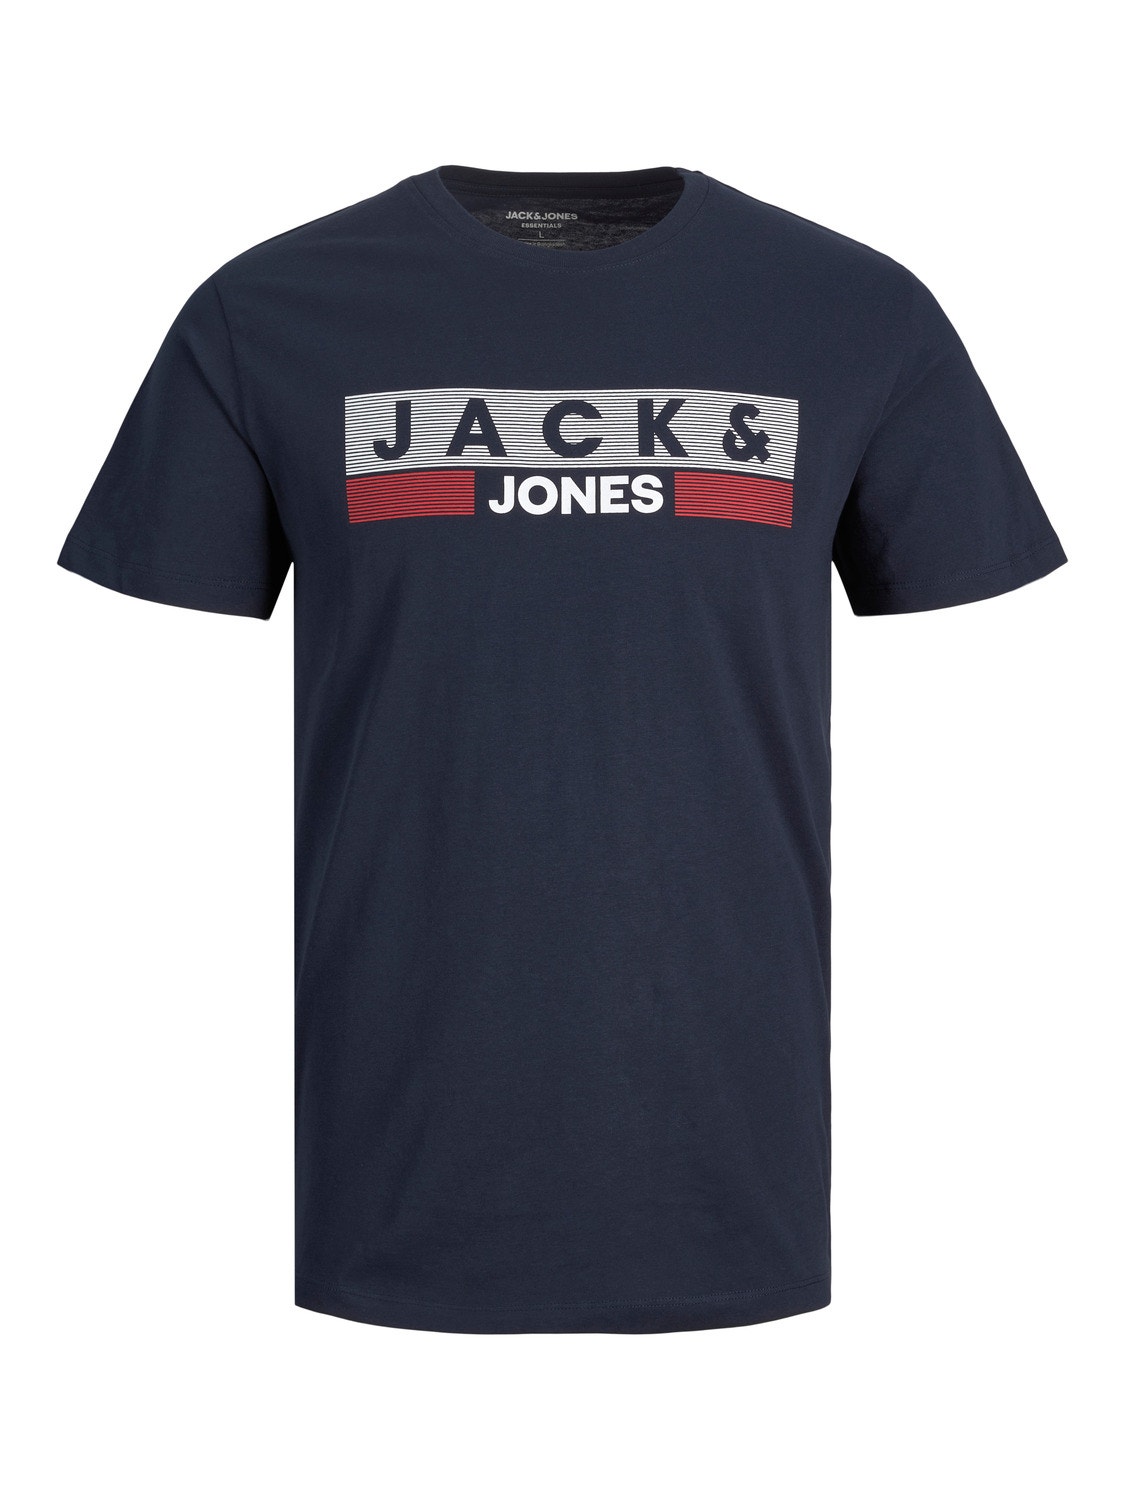 Jack & Jones Plus Size Logotipas Marškinėliai -Navy Blazer - 12158505